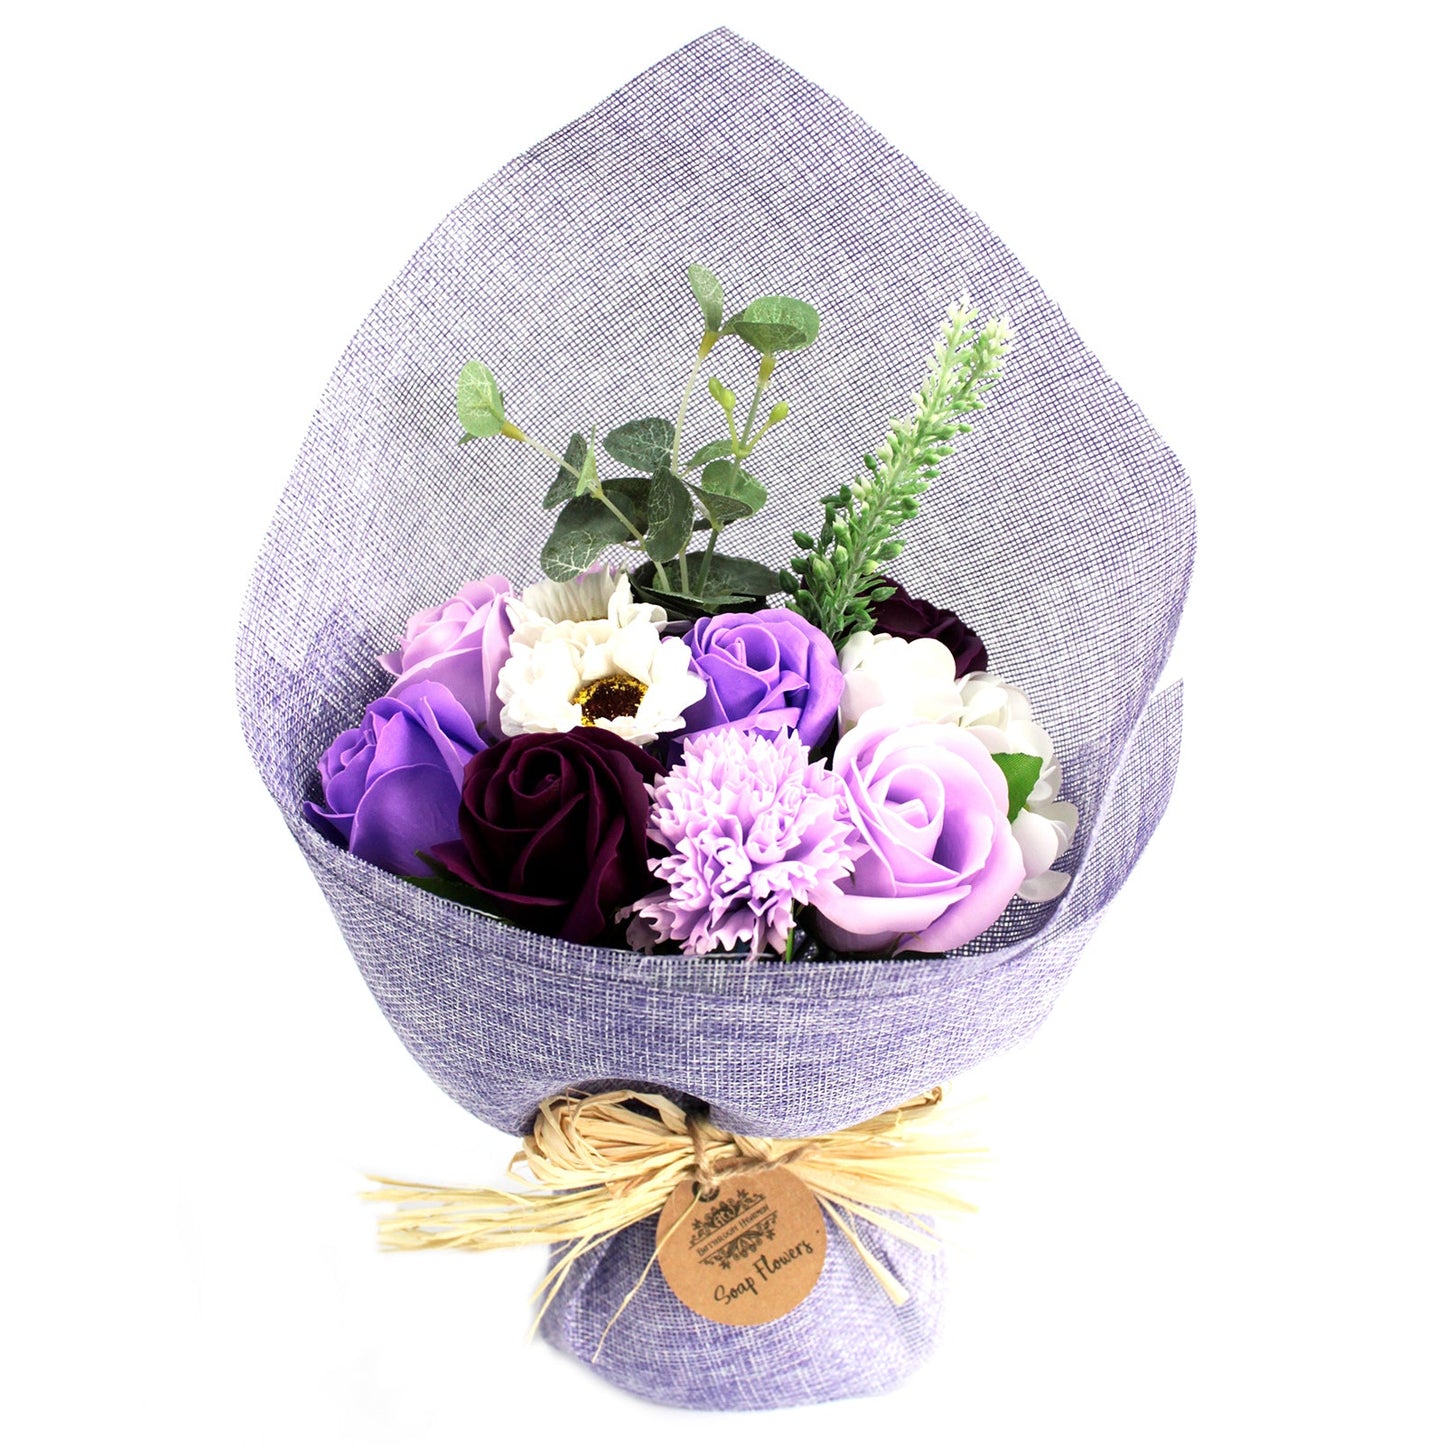 Flower Soap Bouquet - Standing Soap Flowers Soul Inspired Purple 